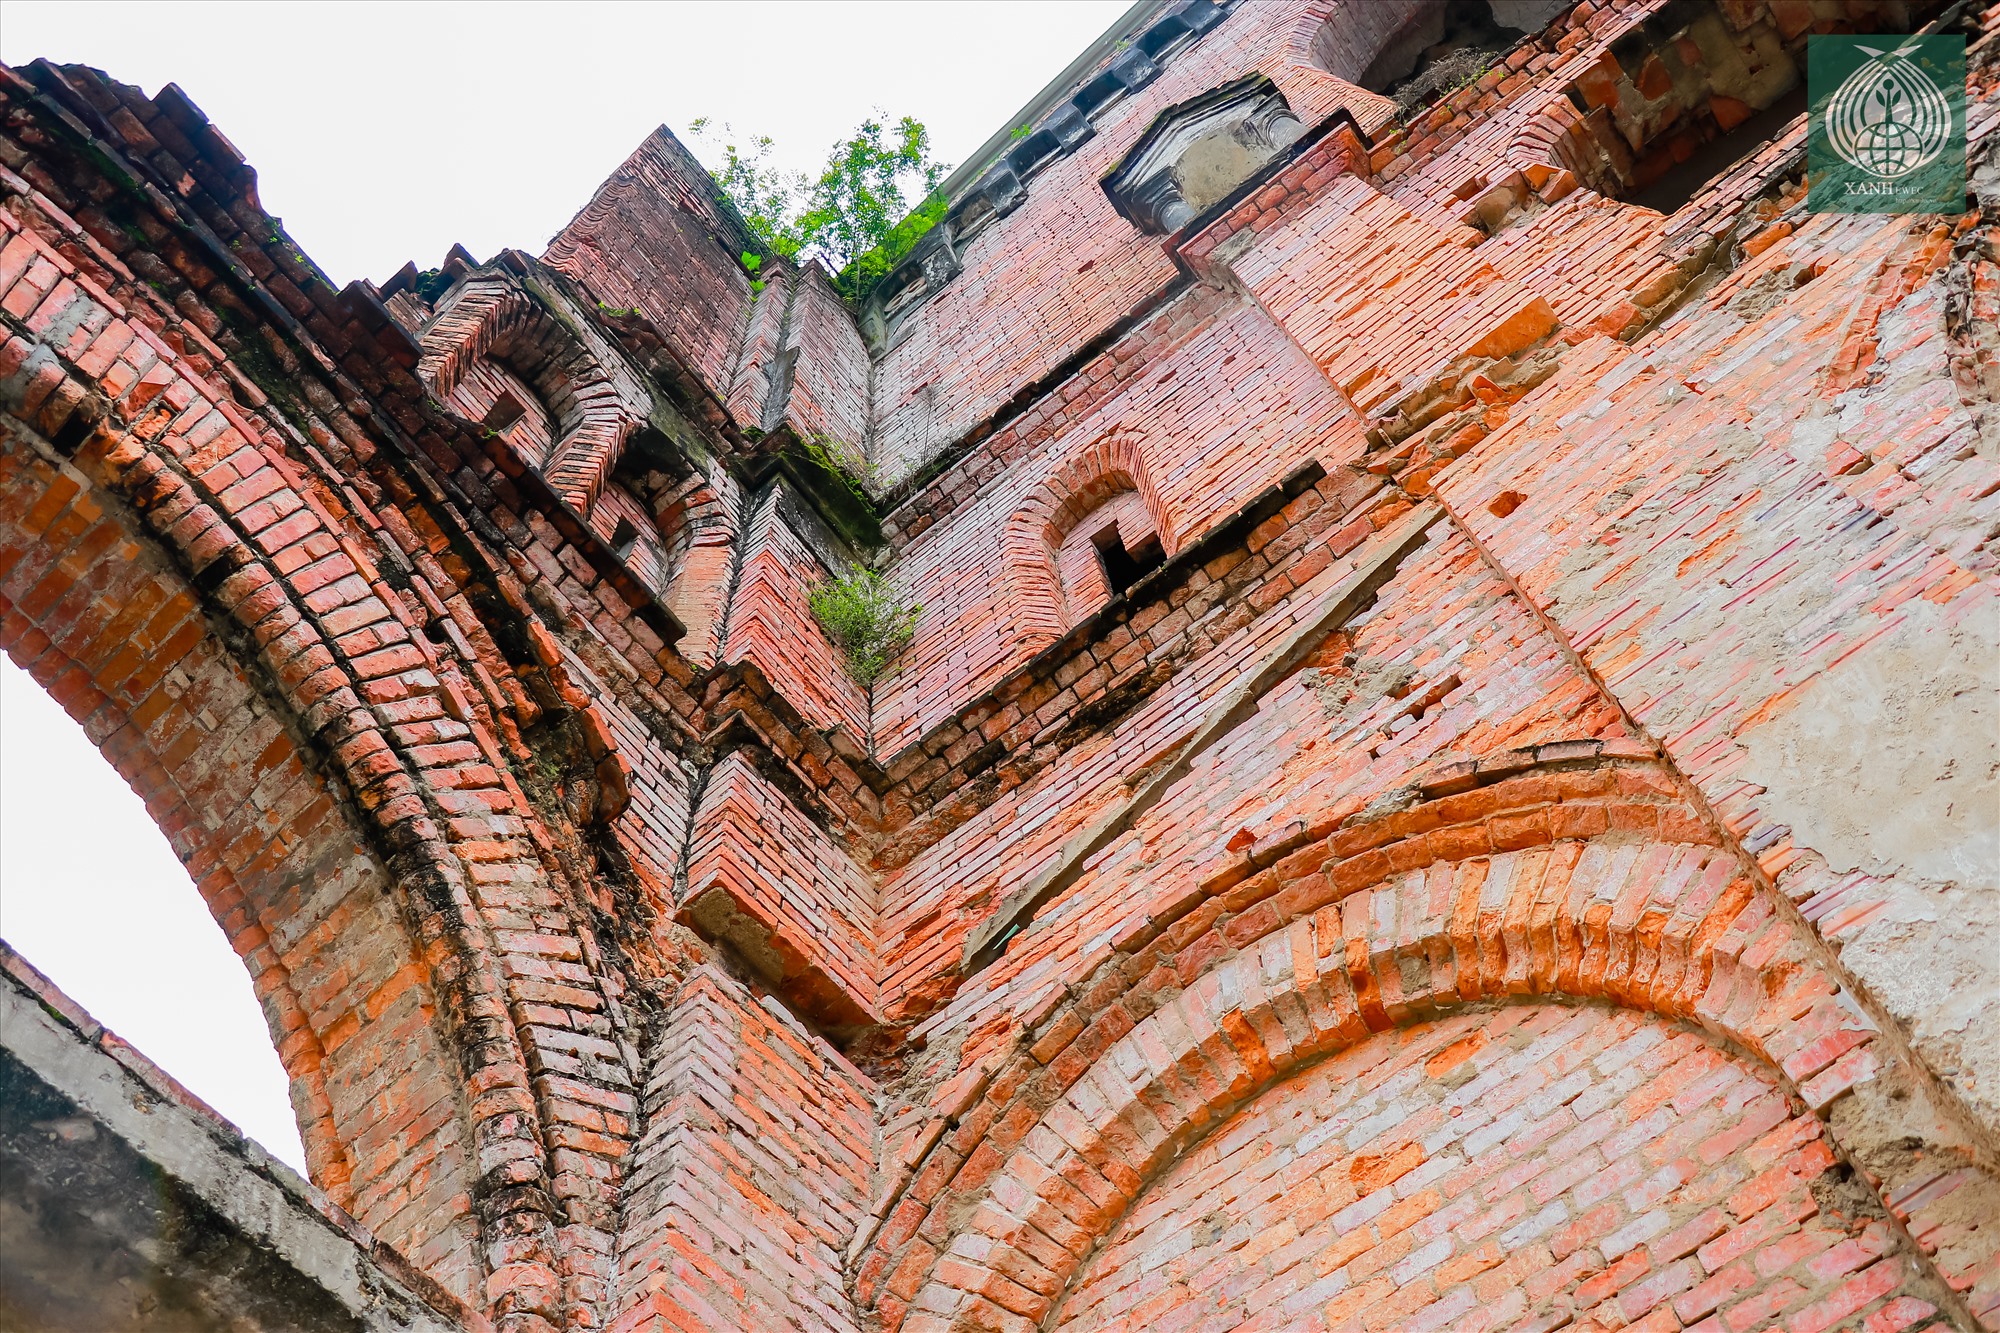 Chính giữa thánh địa La Vang, nổi bật là toà tháp xây bằng gạch đỏ cũ. Mùa hè đỏ lửa năm 1972, thánh đường La Vang bị bom đạn chiến tranh đánh sập, chỉ còn lại tháp chuông tồn tại đến ngày nay.